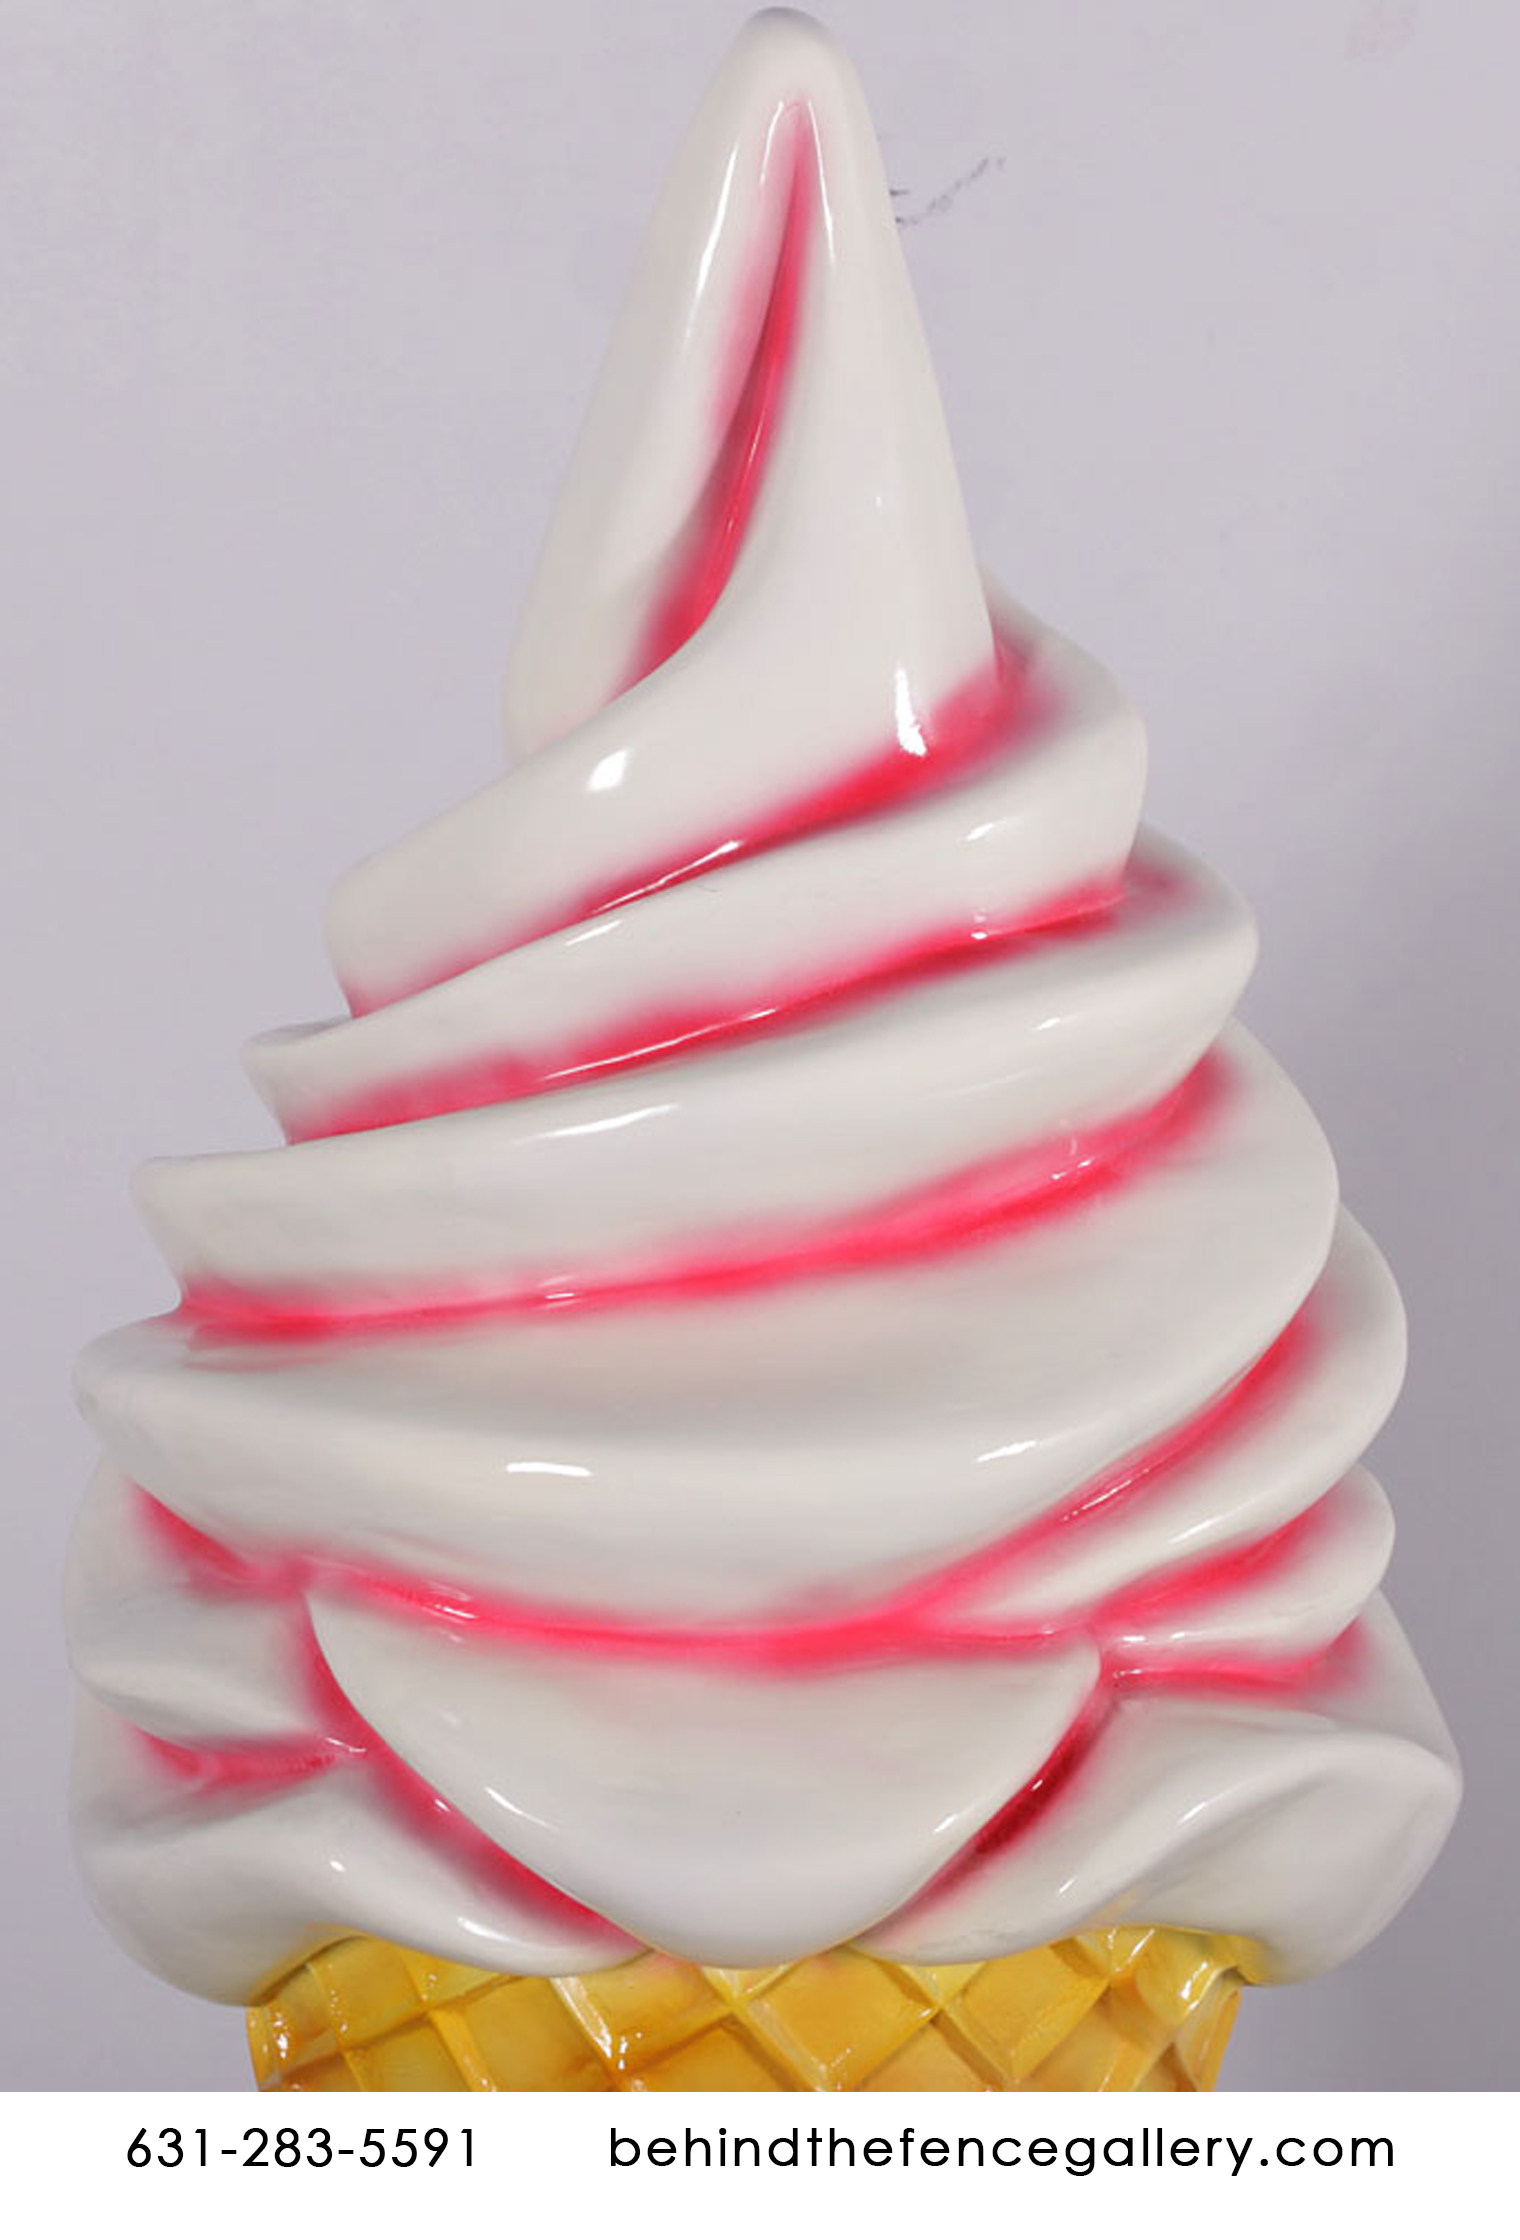 Soft Serve Vanilla Ice Cream Twist Cone on Base Statue - Click Image to Close